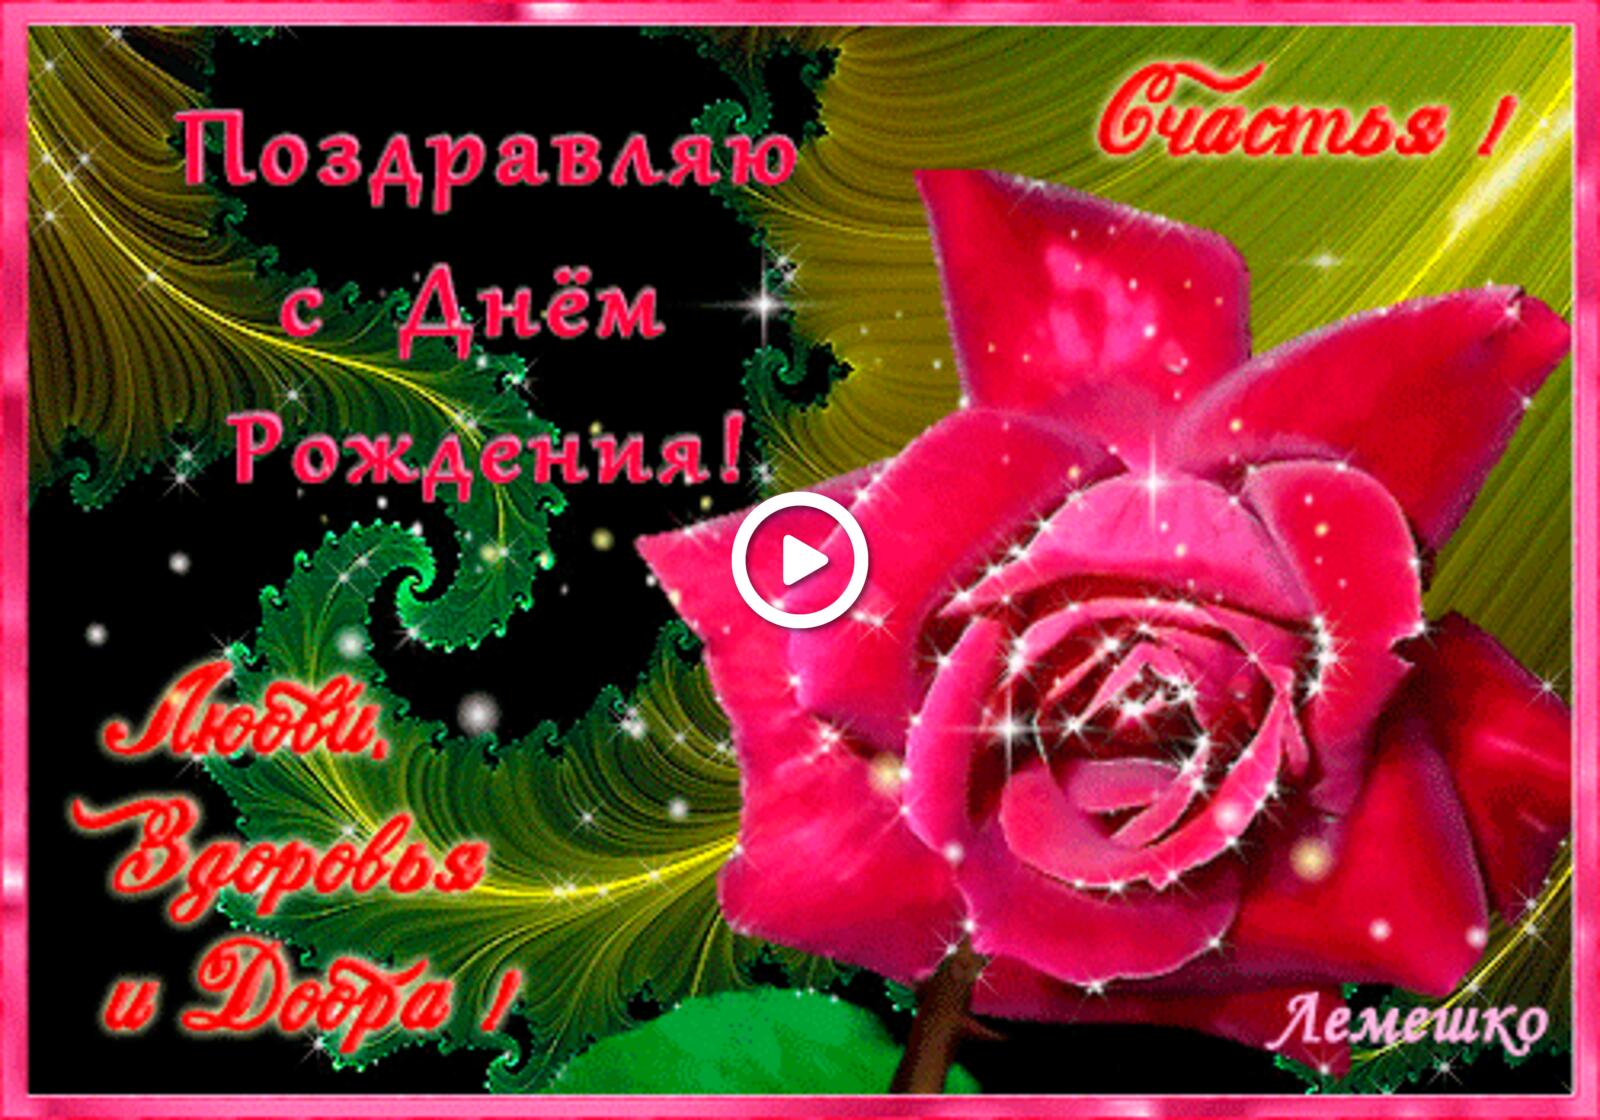 一张以粉红玫瑰 闪闪发光的贺卡 玫瑰为主题的明信片